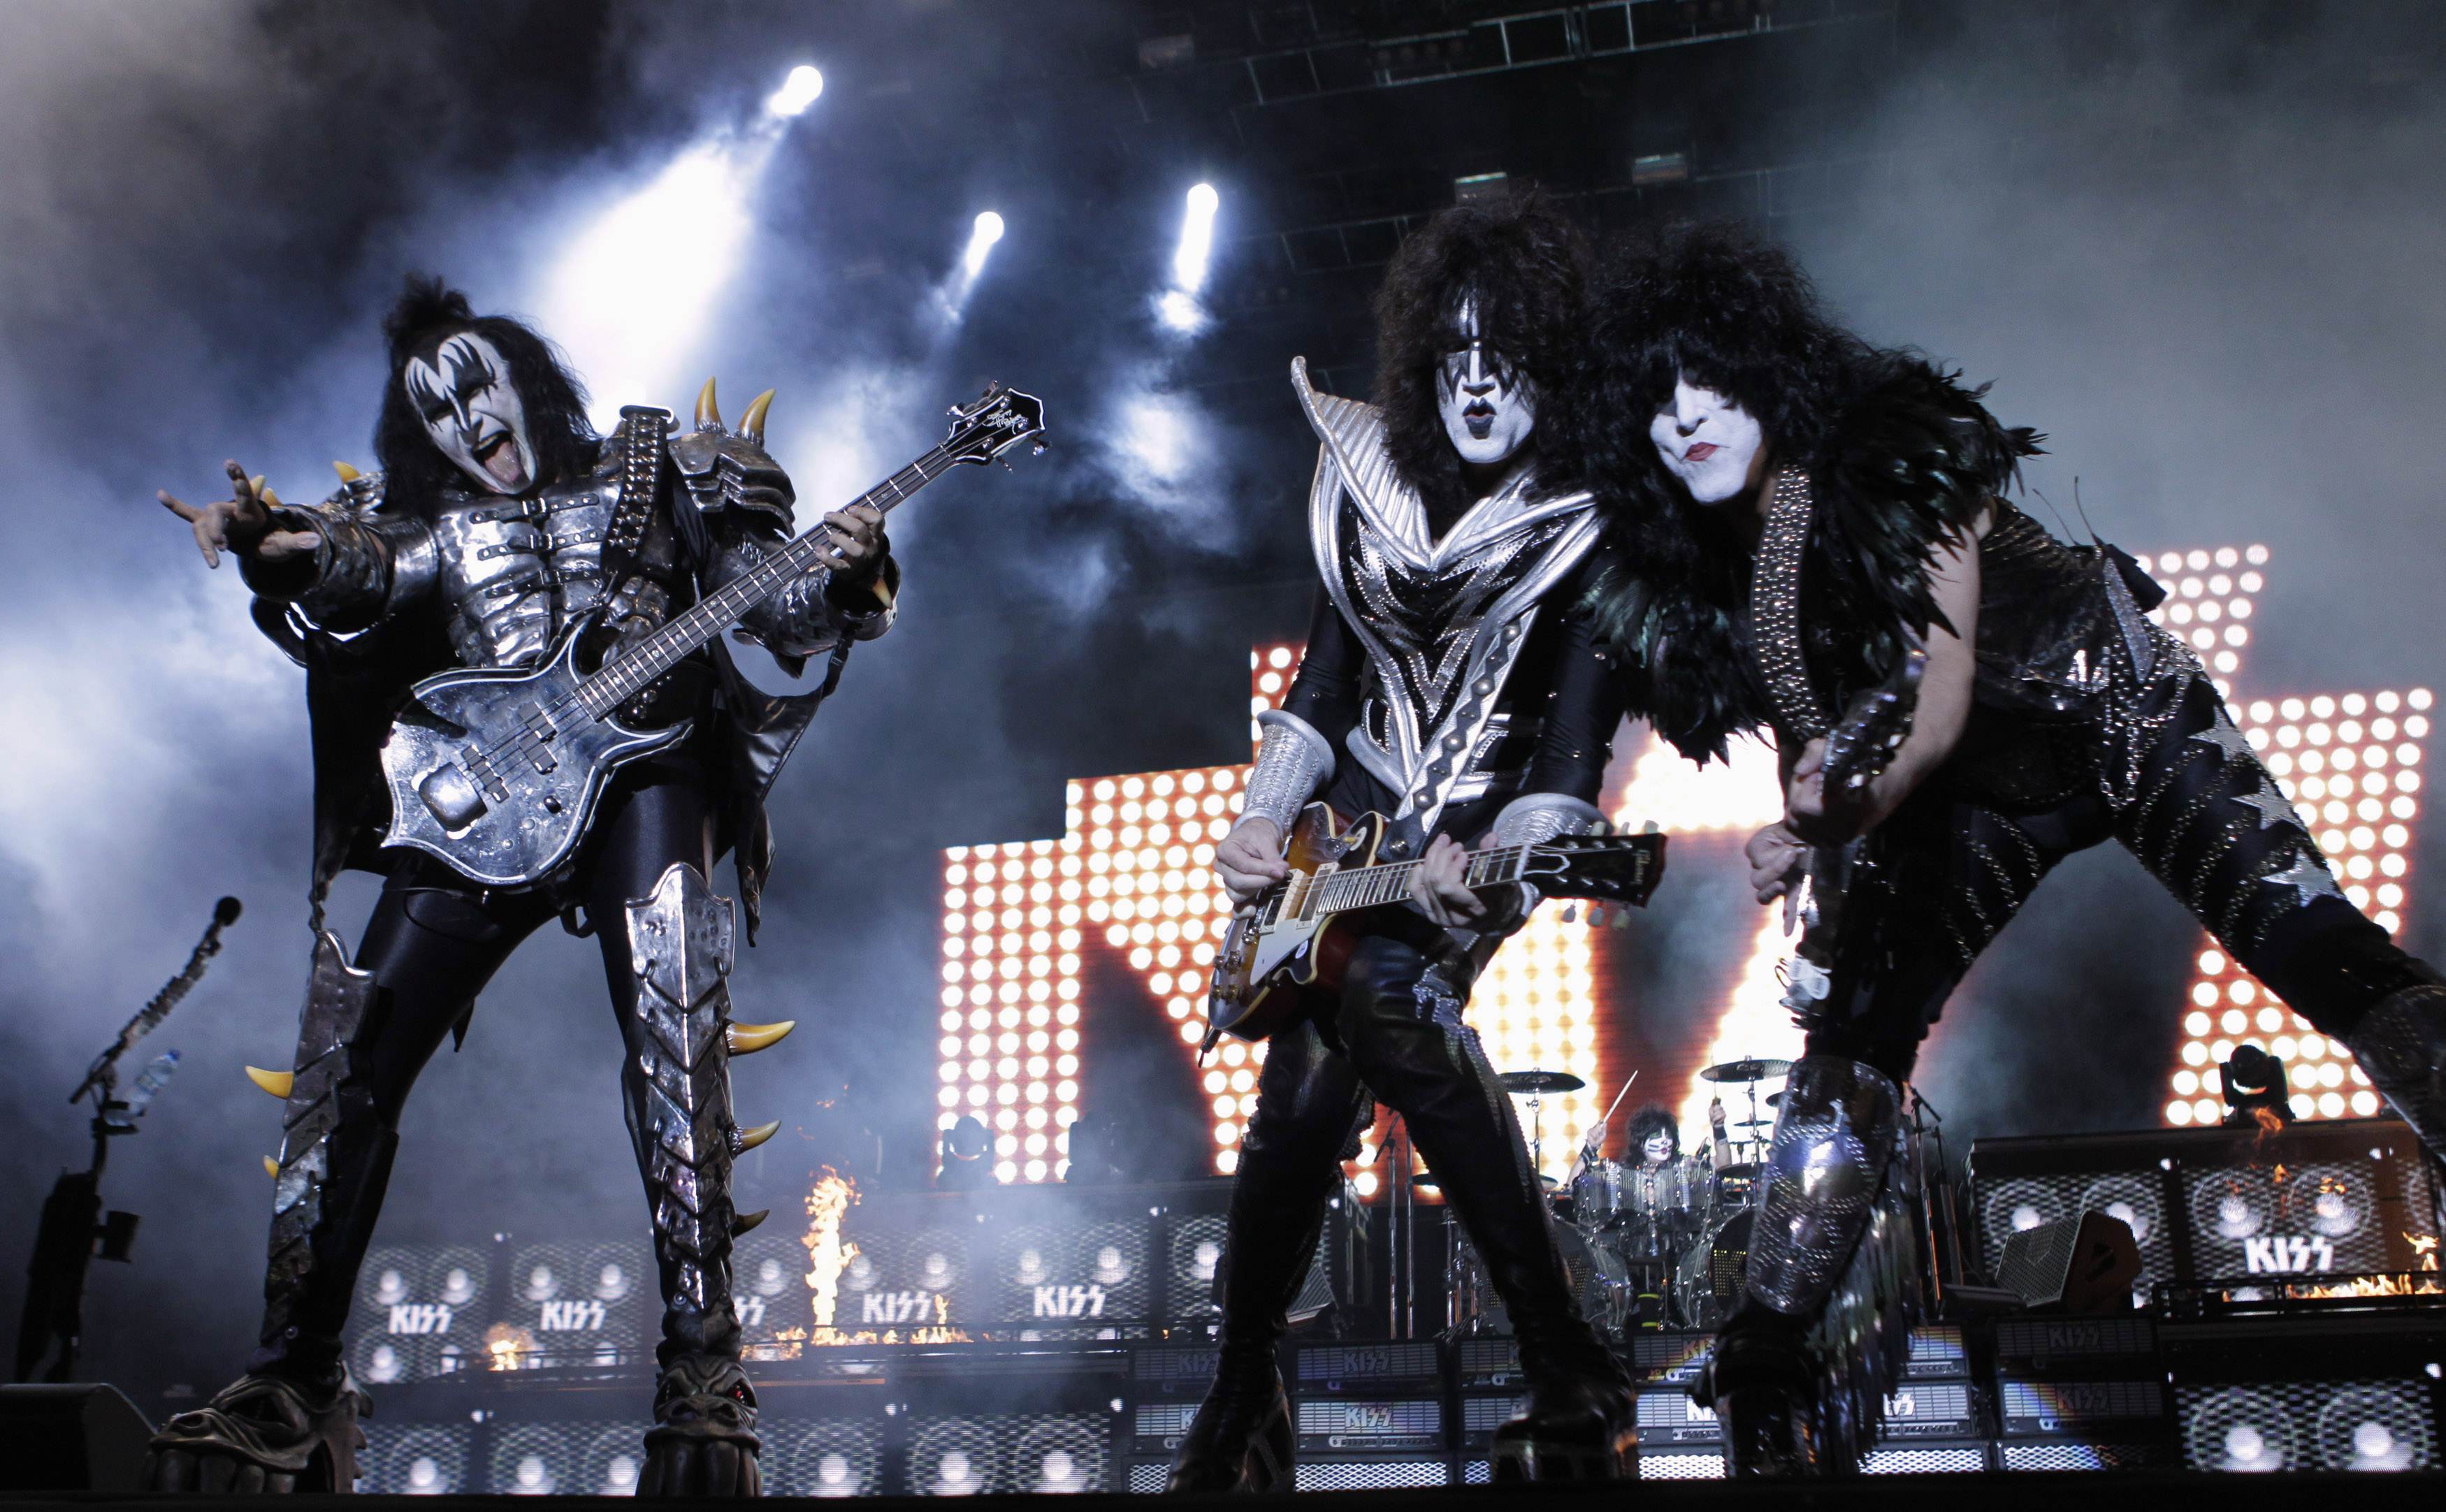 Kiss band announce final tour